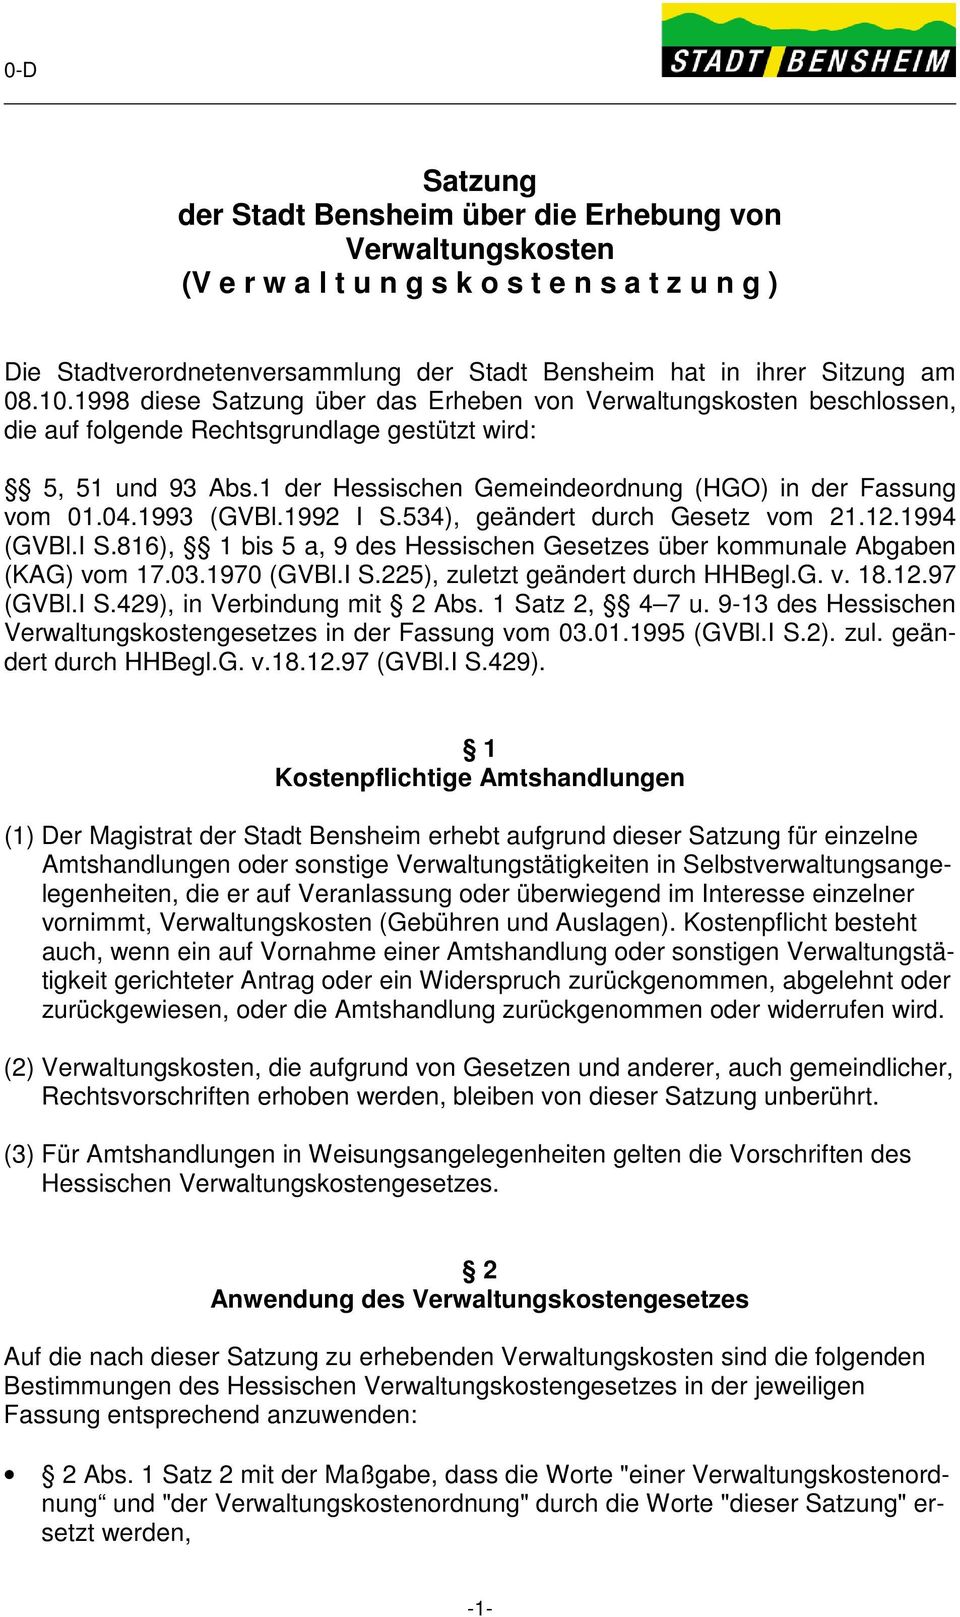 1993 (GVBl.1992 I S.534), geändert durch Gesetz vom 21.12.1994 (GVBl.I S.816), 1 bis 5 a, 9 des Hessischen Gesetzes über kommunale Abgaben (KAG) vom 17.03.1970 (GVBl.I S.225), zuletzt geändert durch HHBegl.